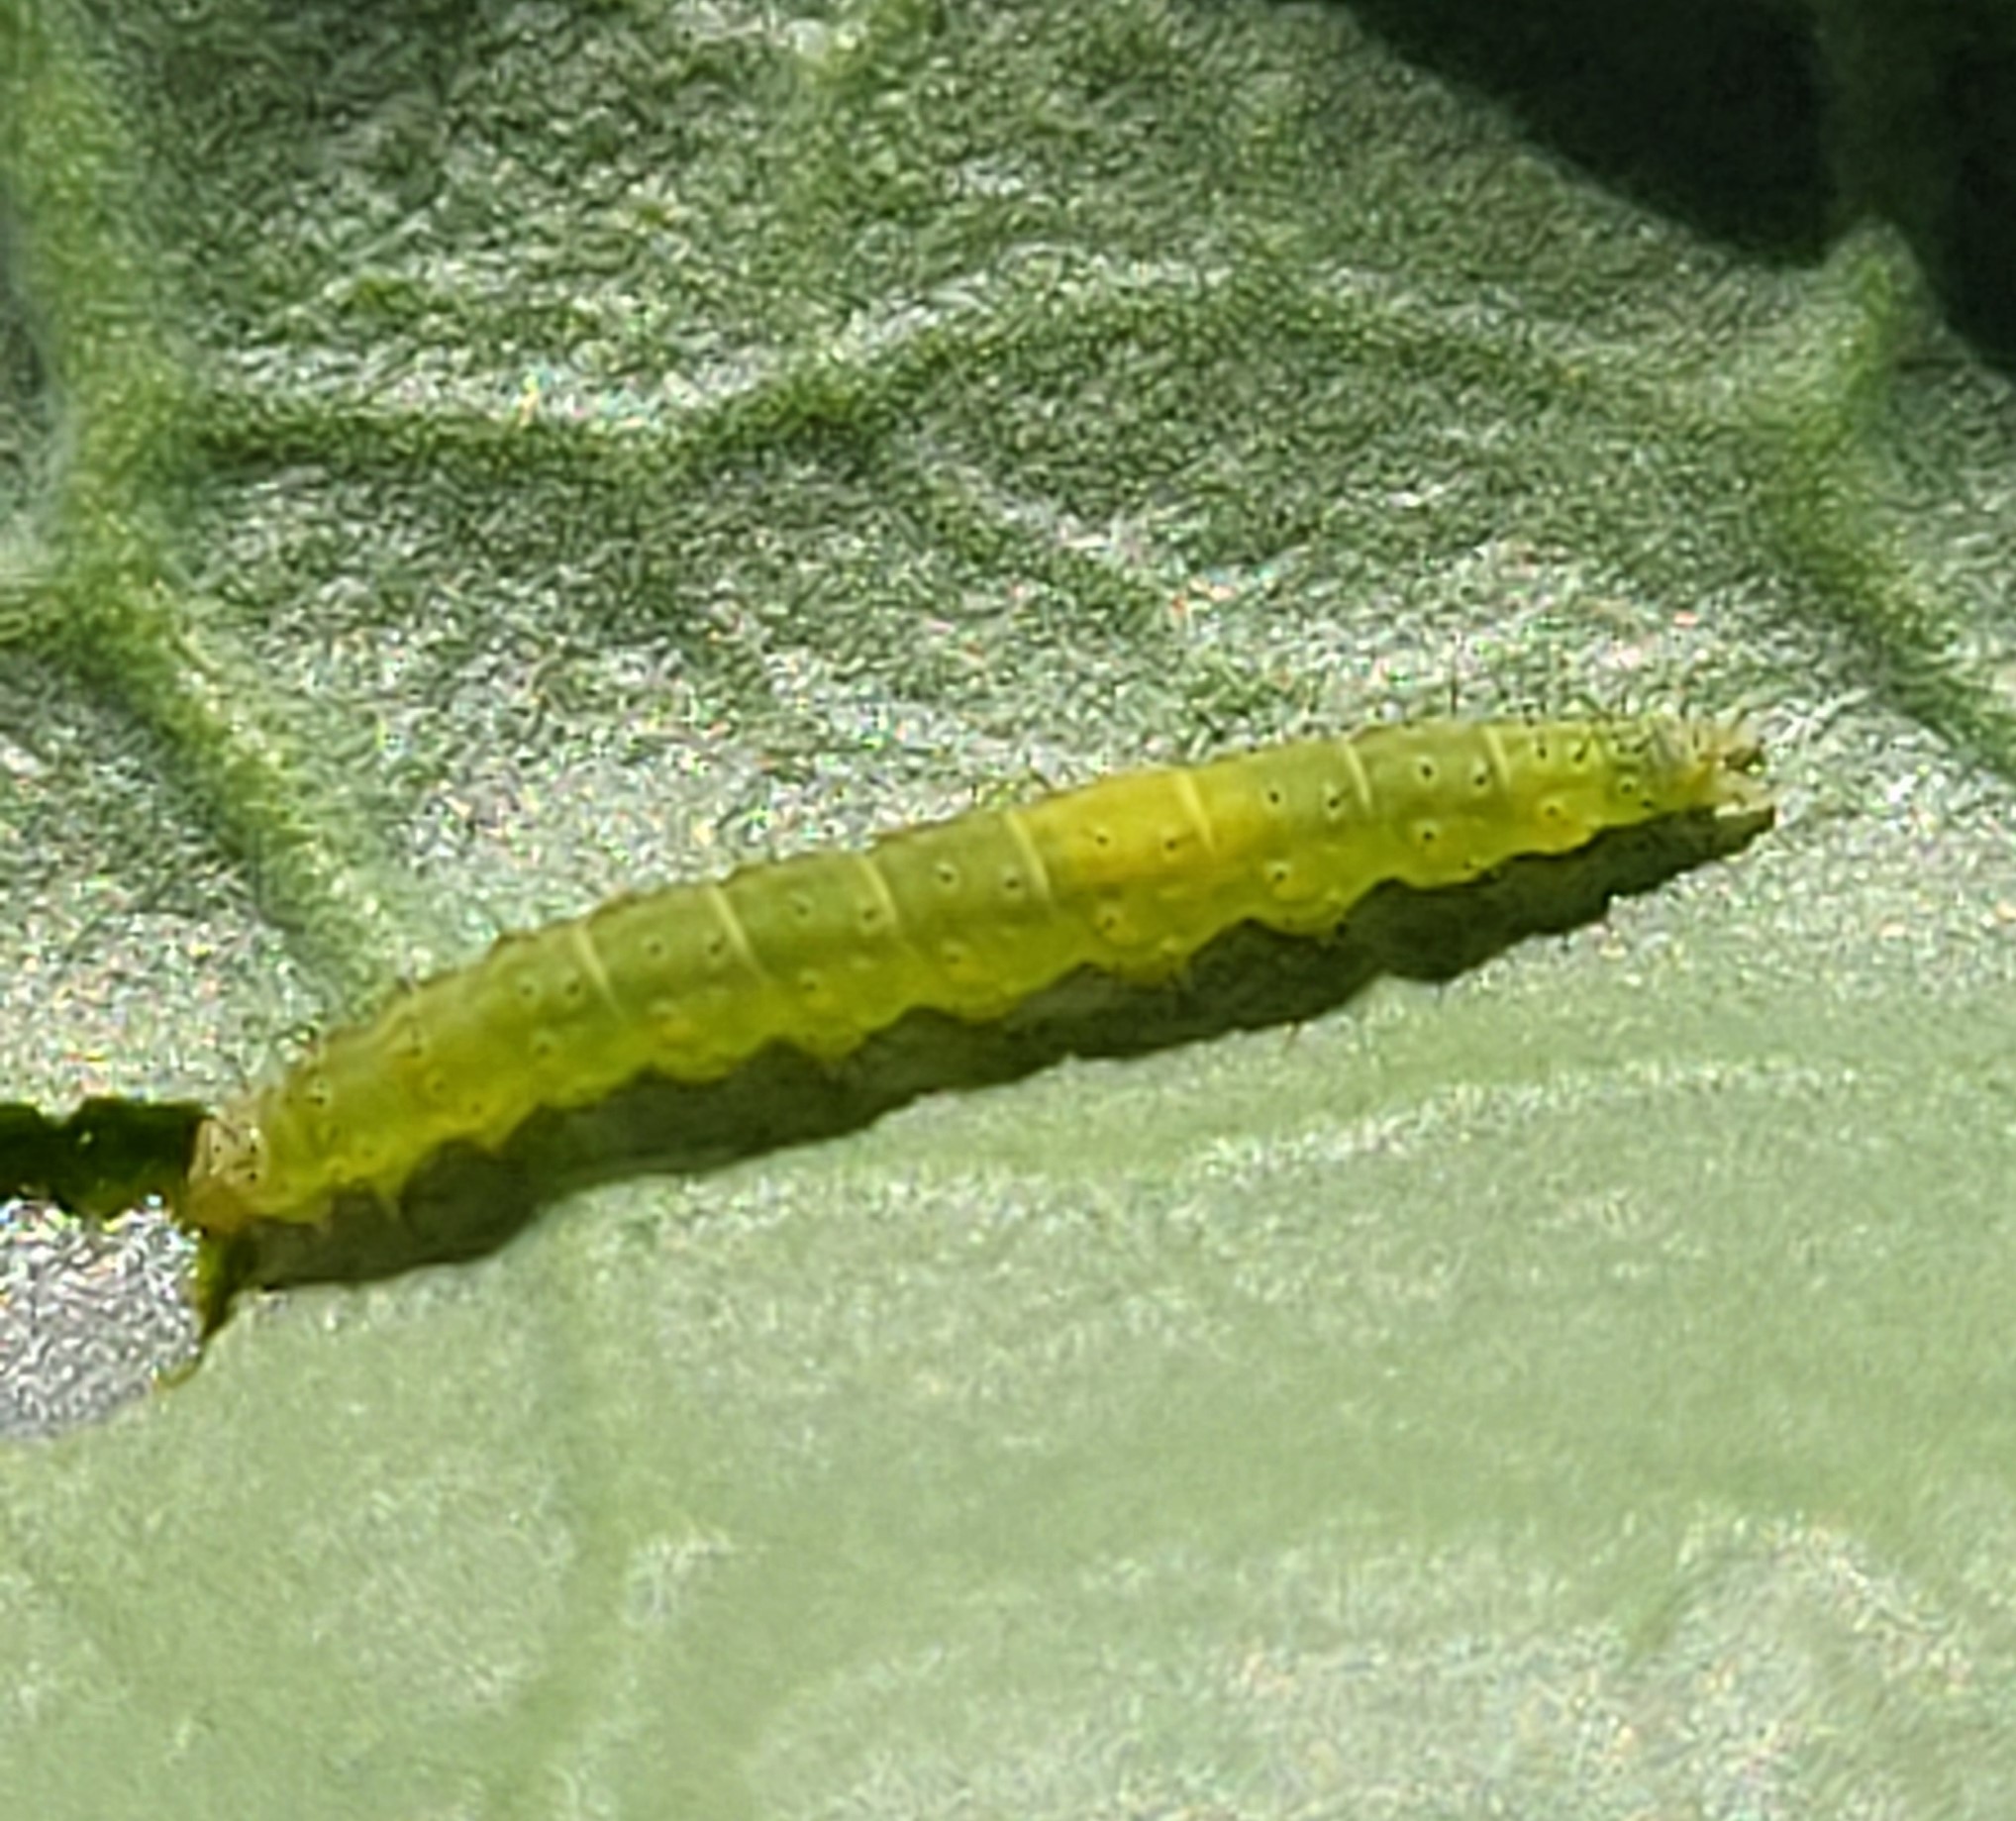 Diamondback moth larva on a leaf.